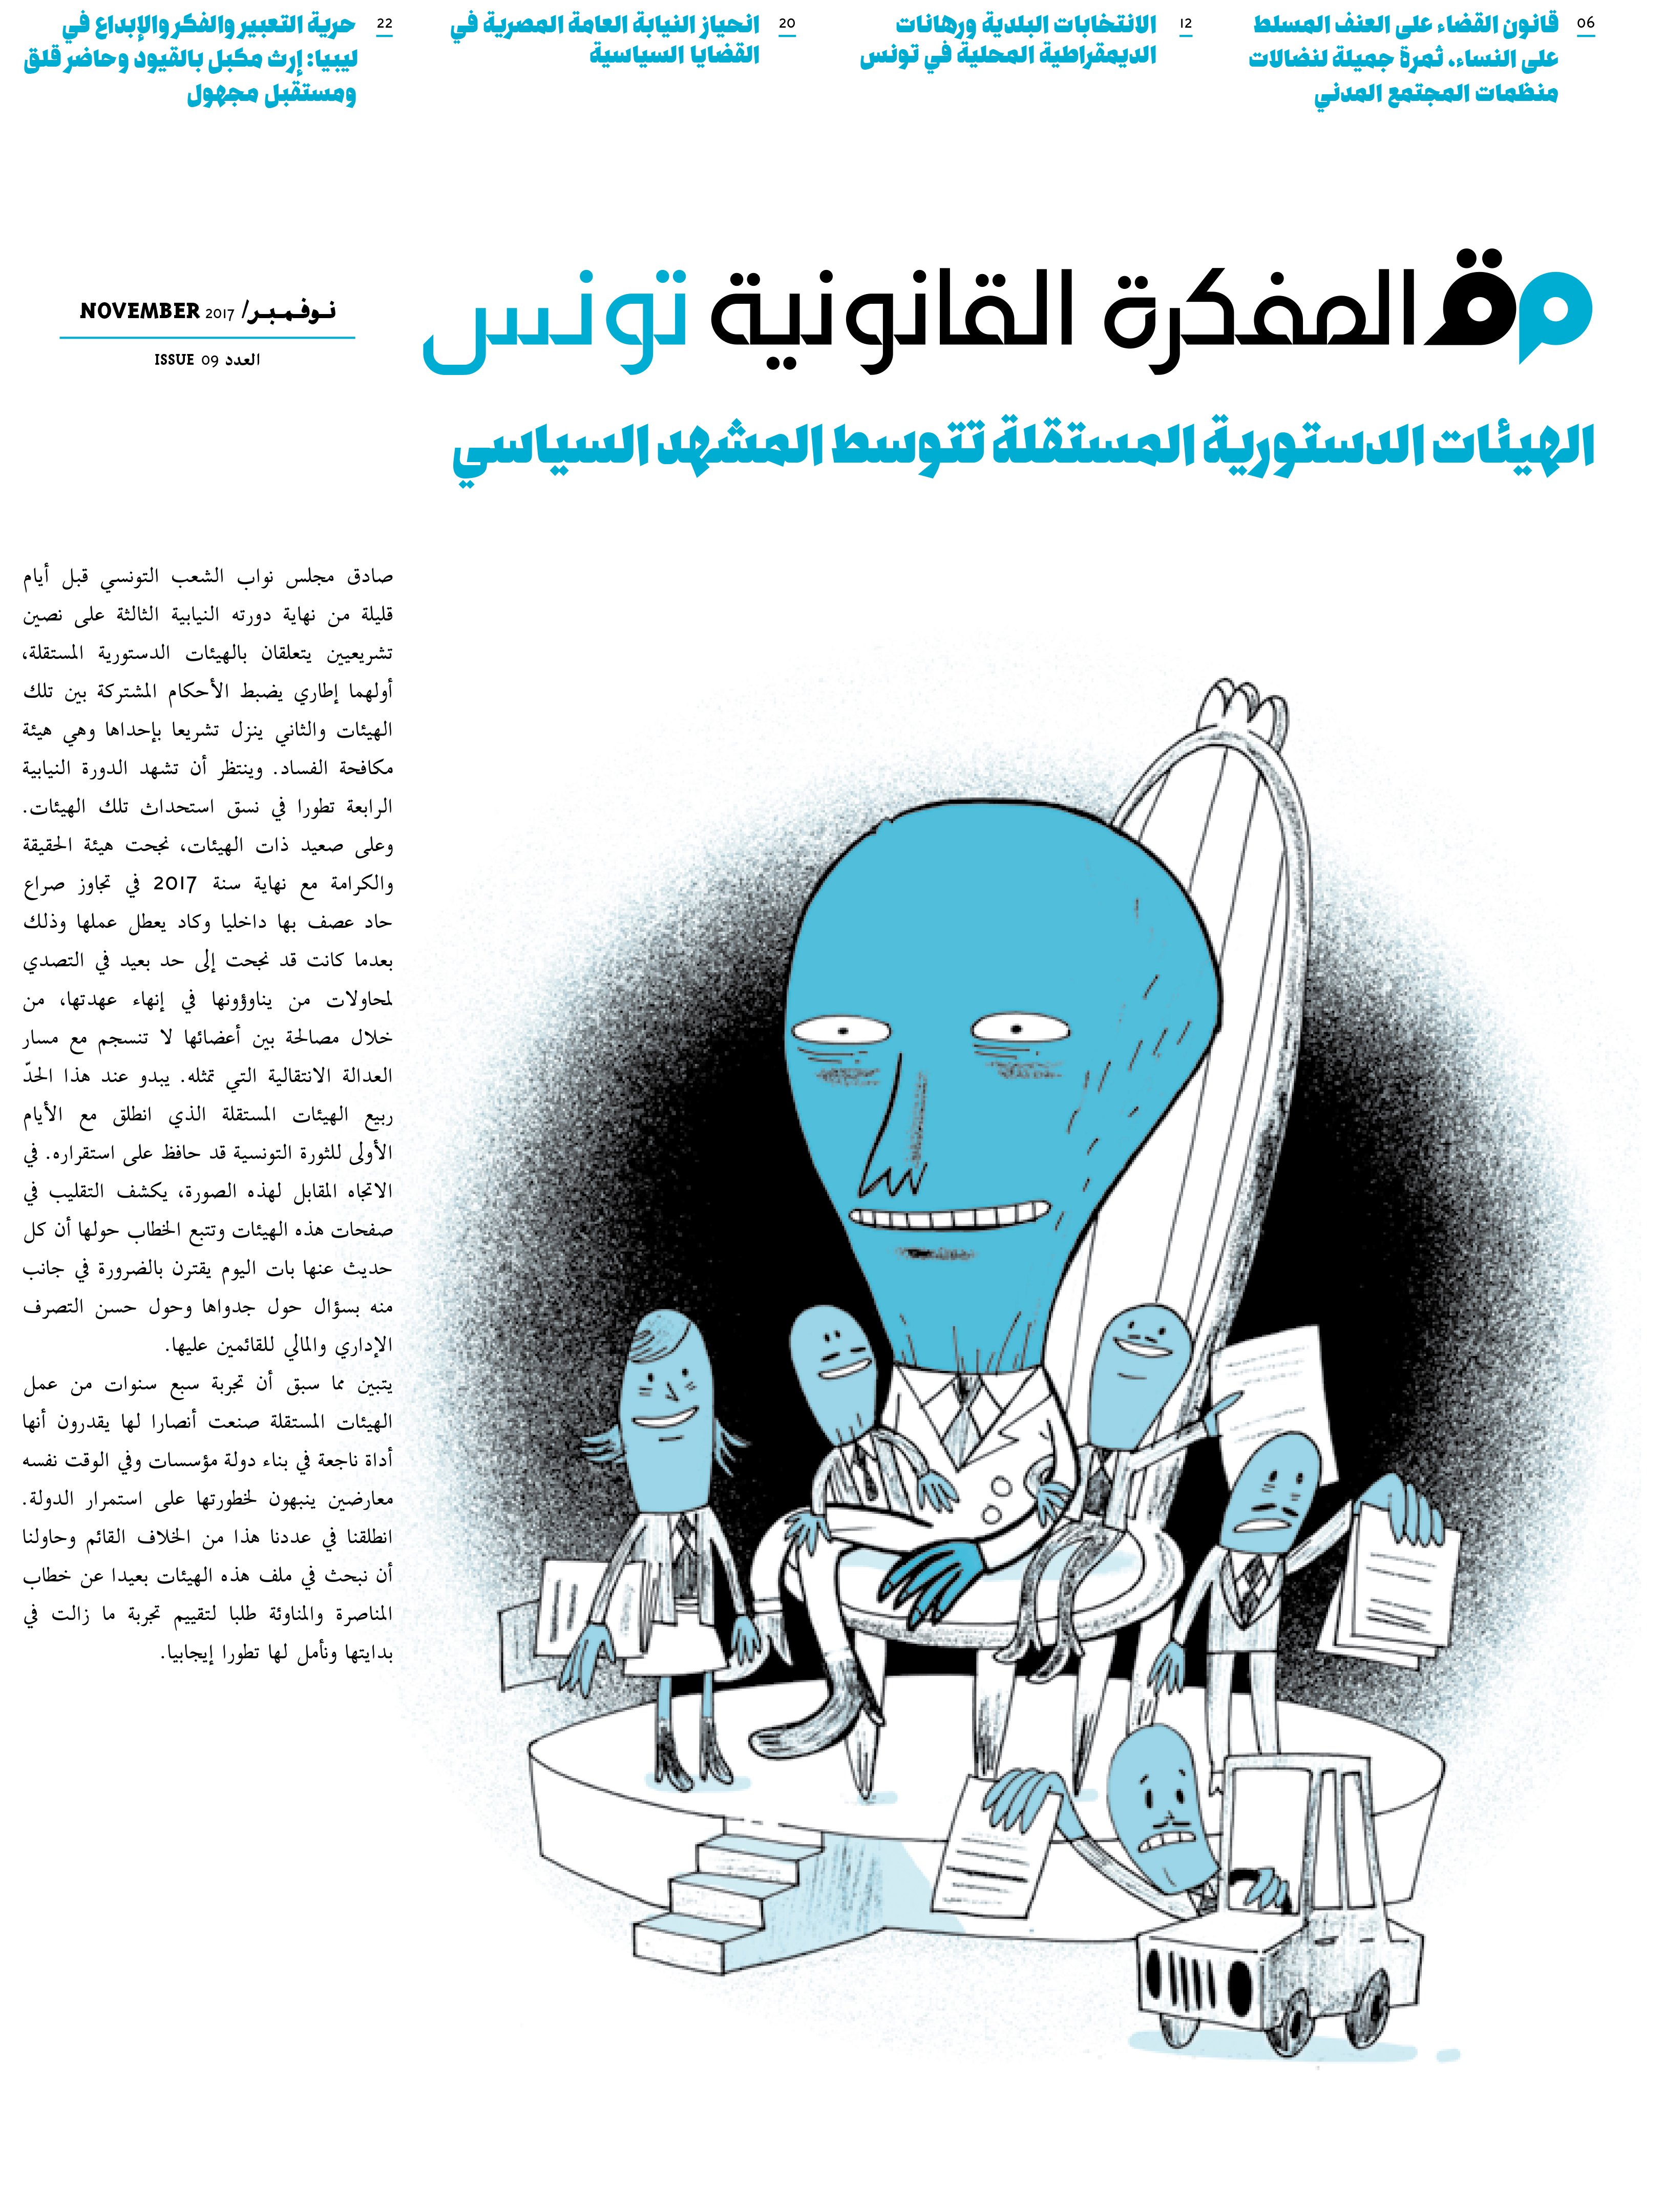 صدر العدد 9 من مجلة المفكرة القانونية في تونس: “الهيئات الدستورية المستقلة تتوسط المشهد السياسي”